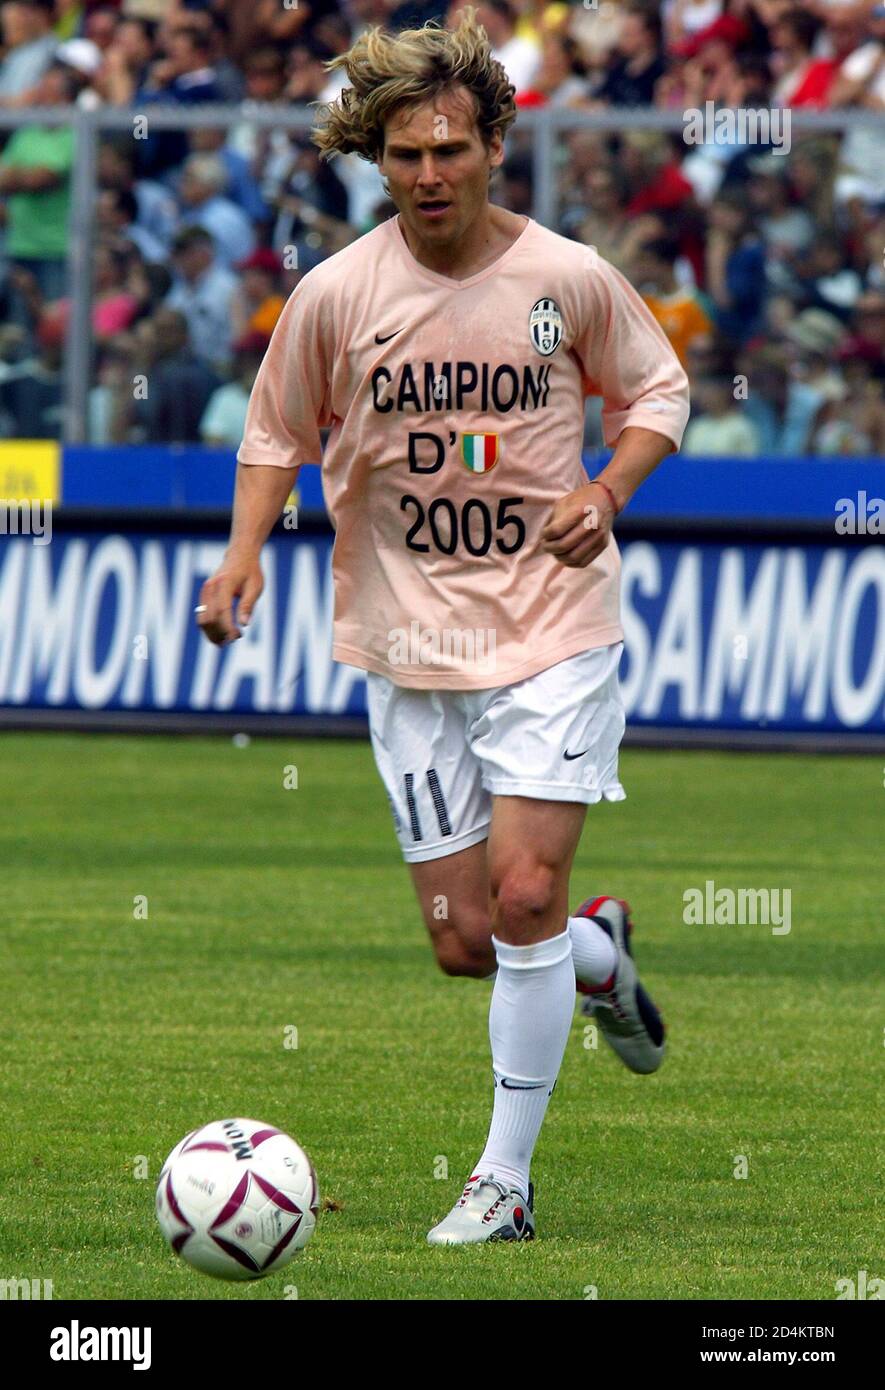 El jugador de la Juventus Pavel Nedved muestra una camiseta que dice  'Juventus Champion of Italy 2005' antes de la serie italiana un partido  contra Livorno en Italia. El jugador de la